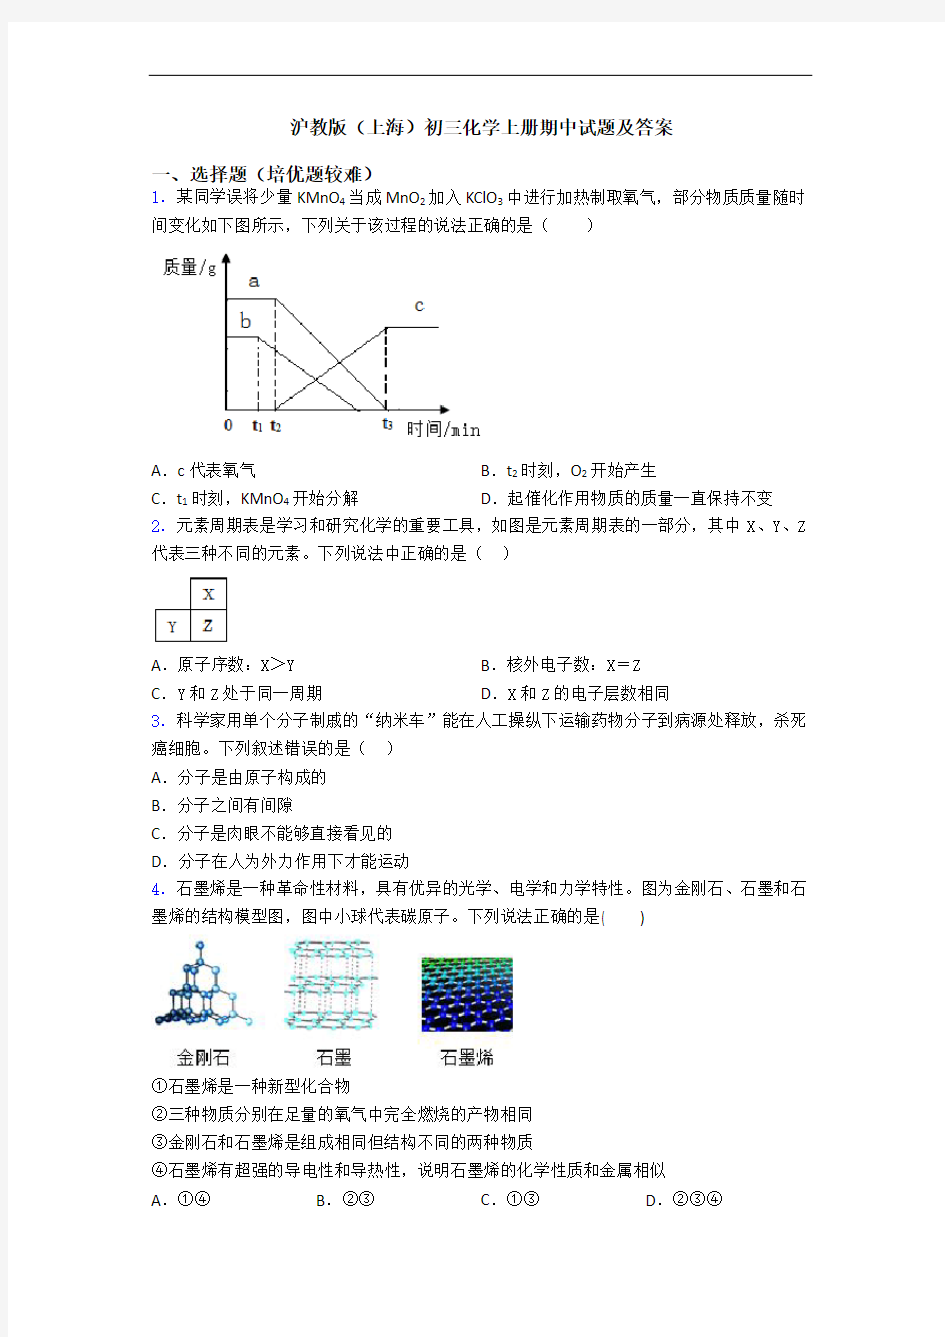 沪教版(上海)初三初三化学上册期中试题及答案